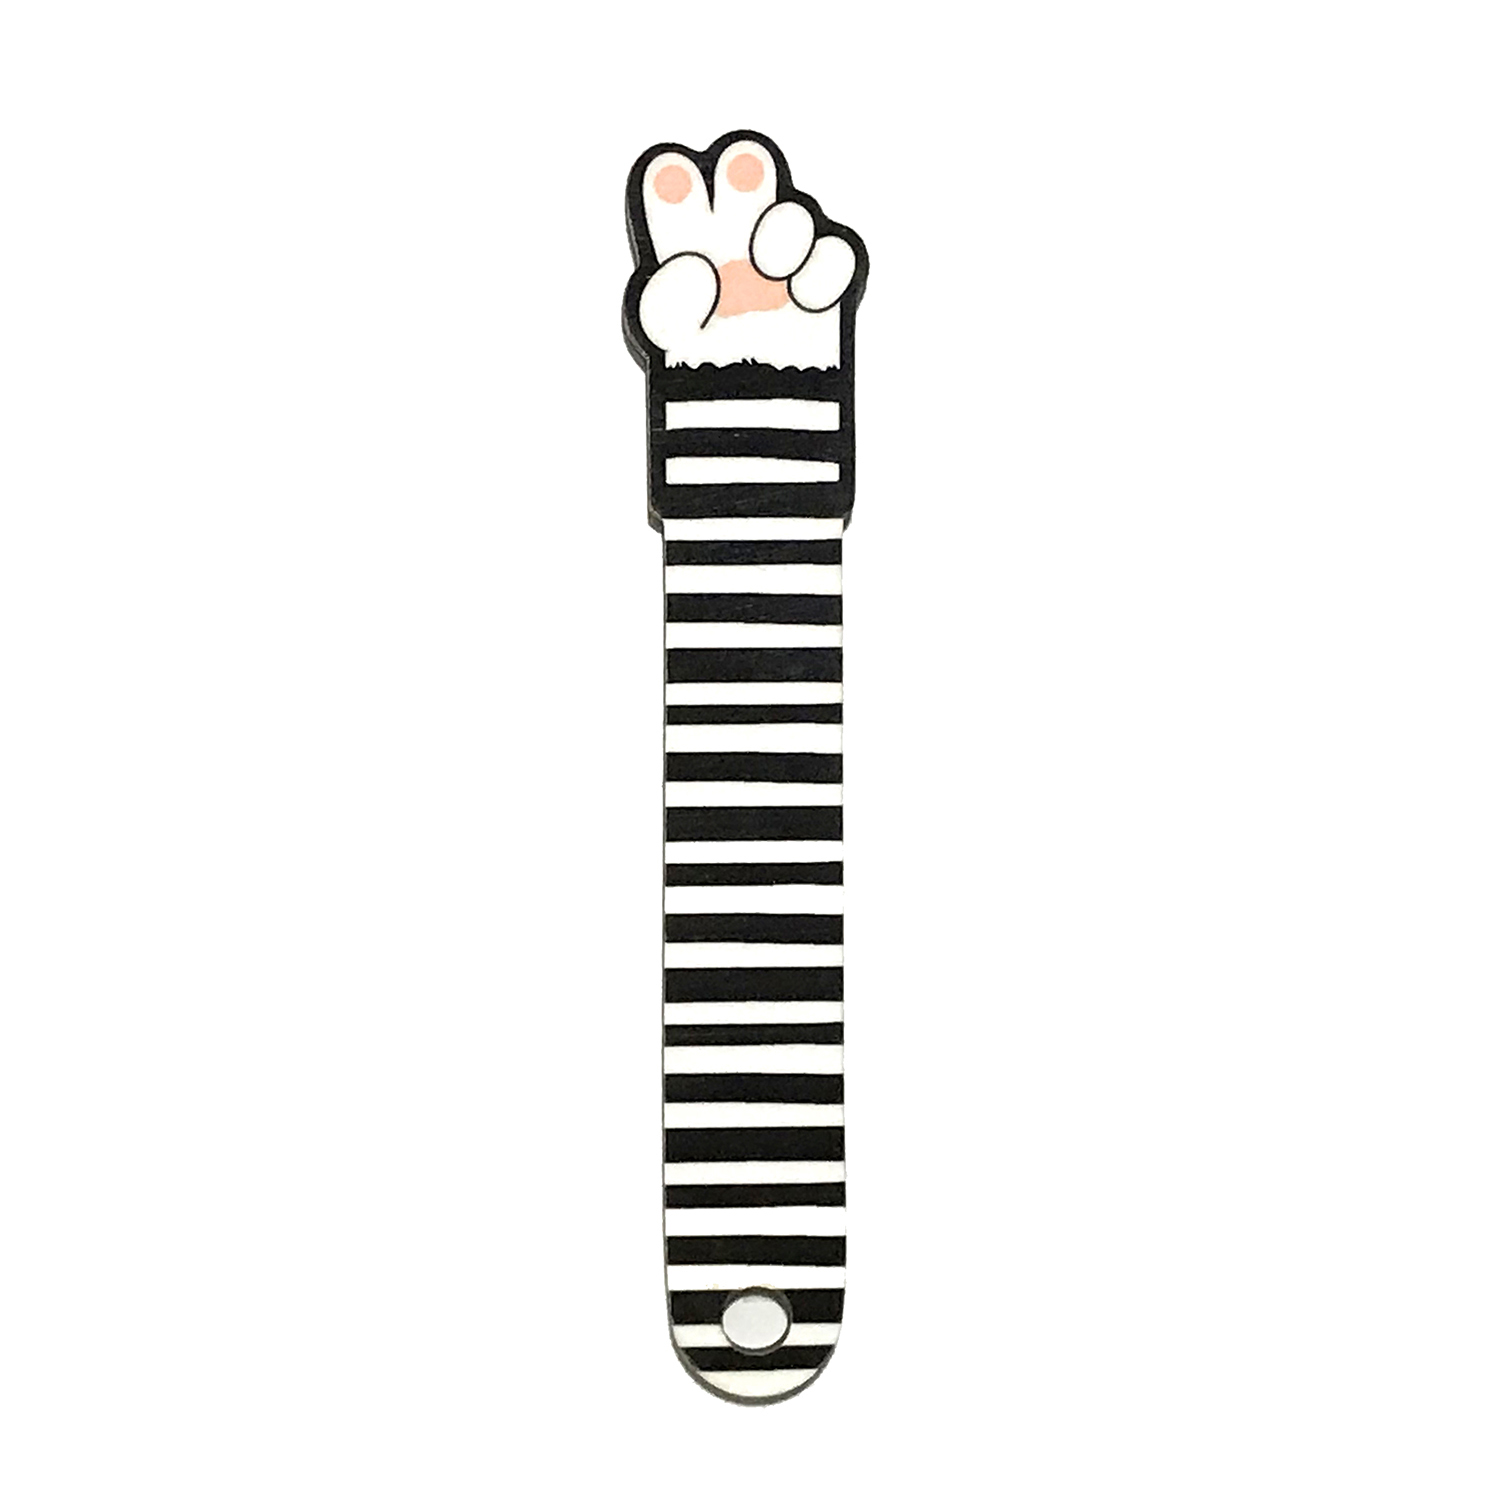 نشانگر کتاب پیکسل میکسل مدل دست گربه سیاه و سفید